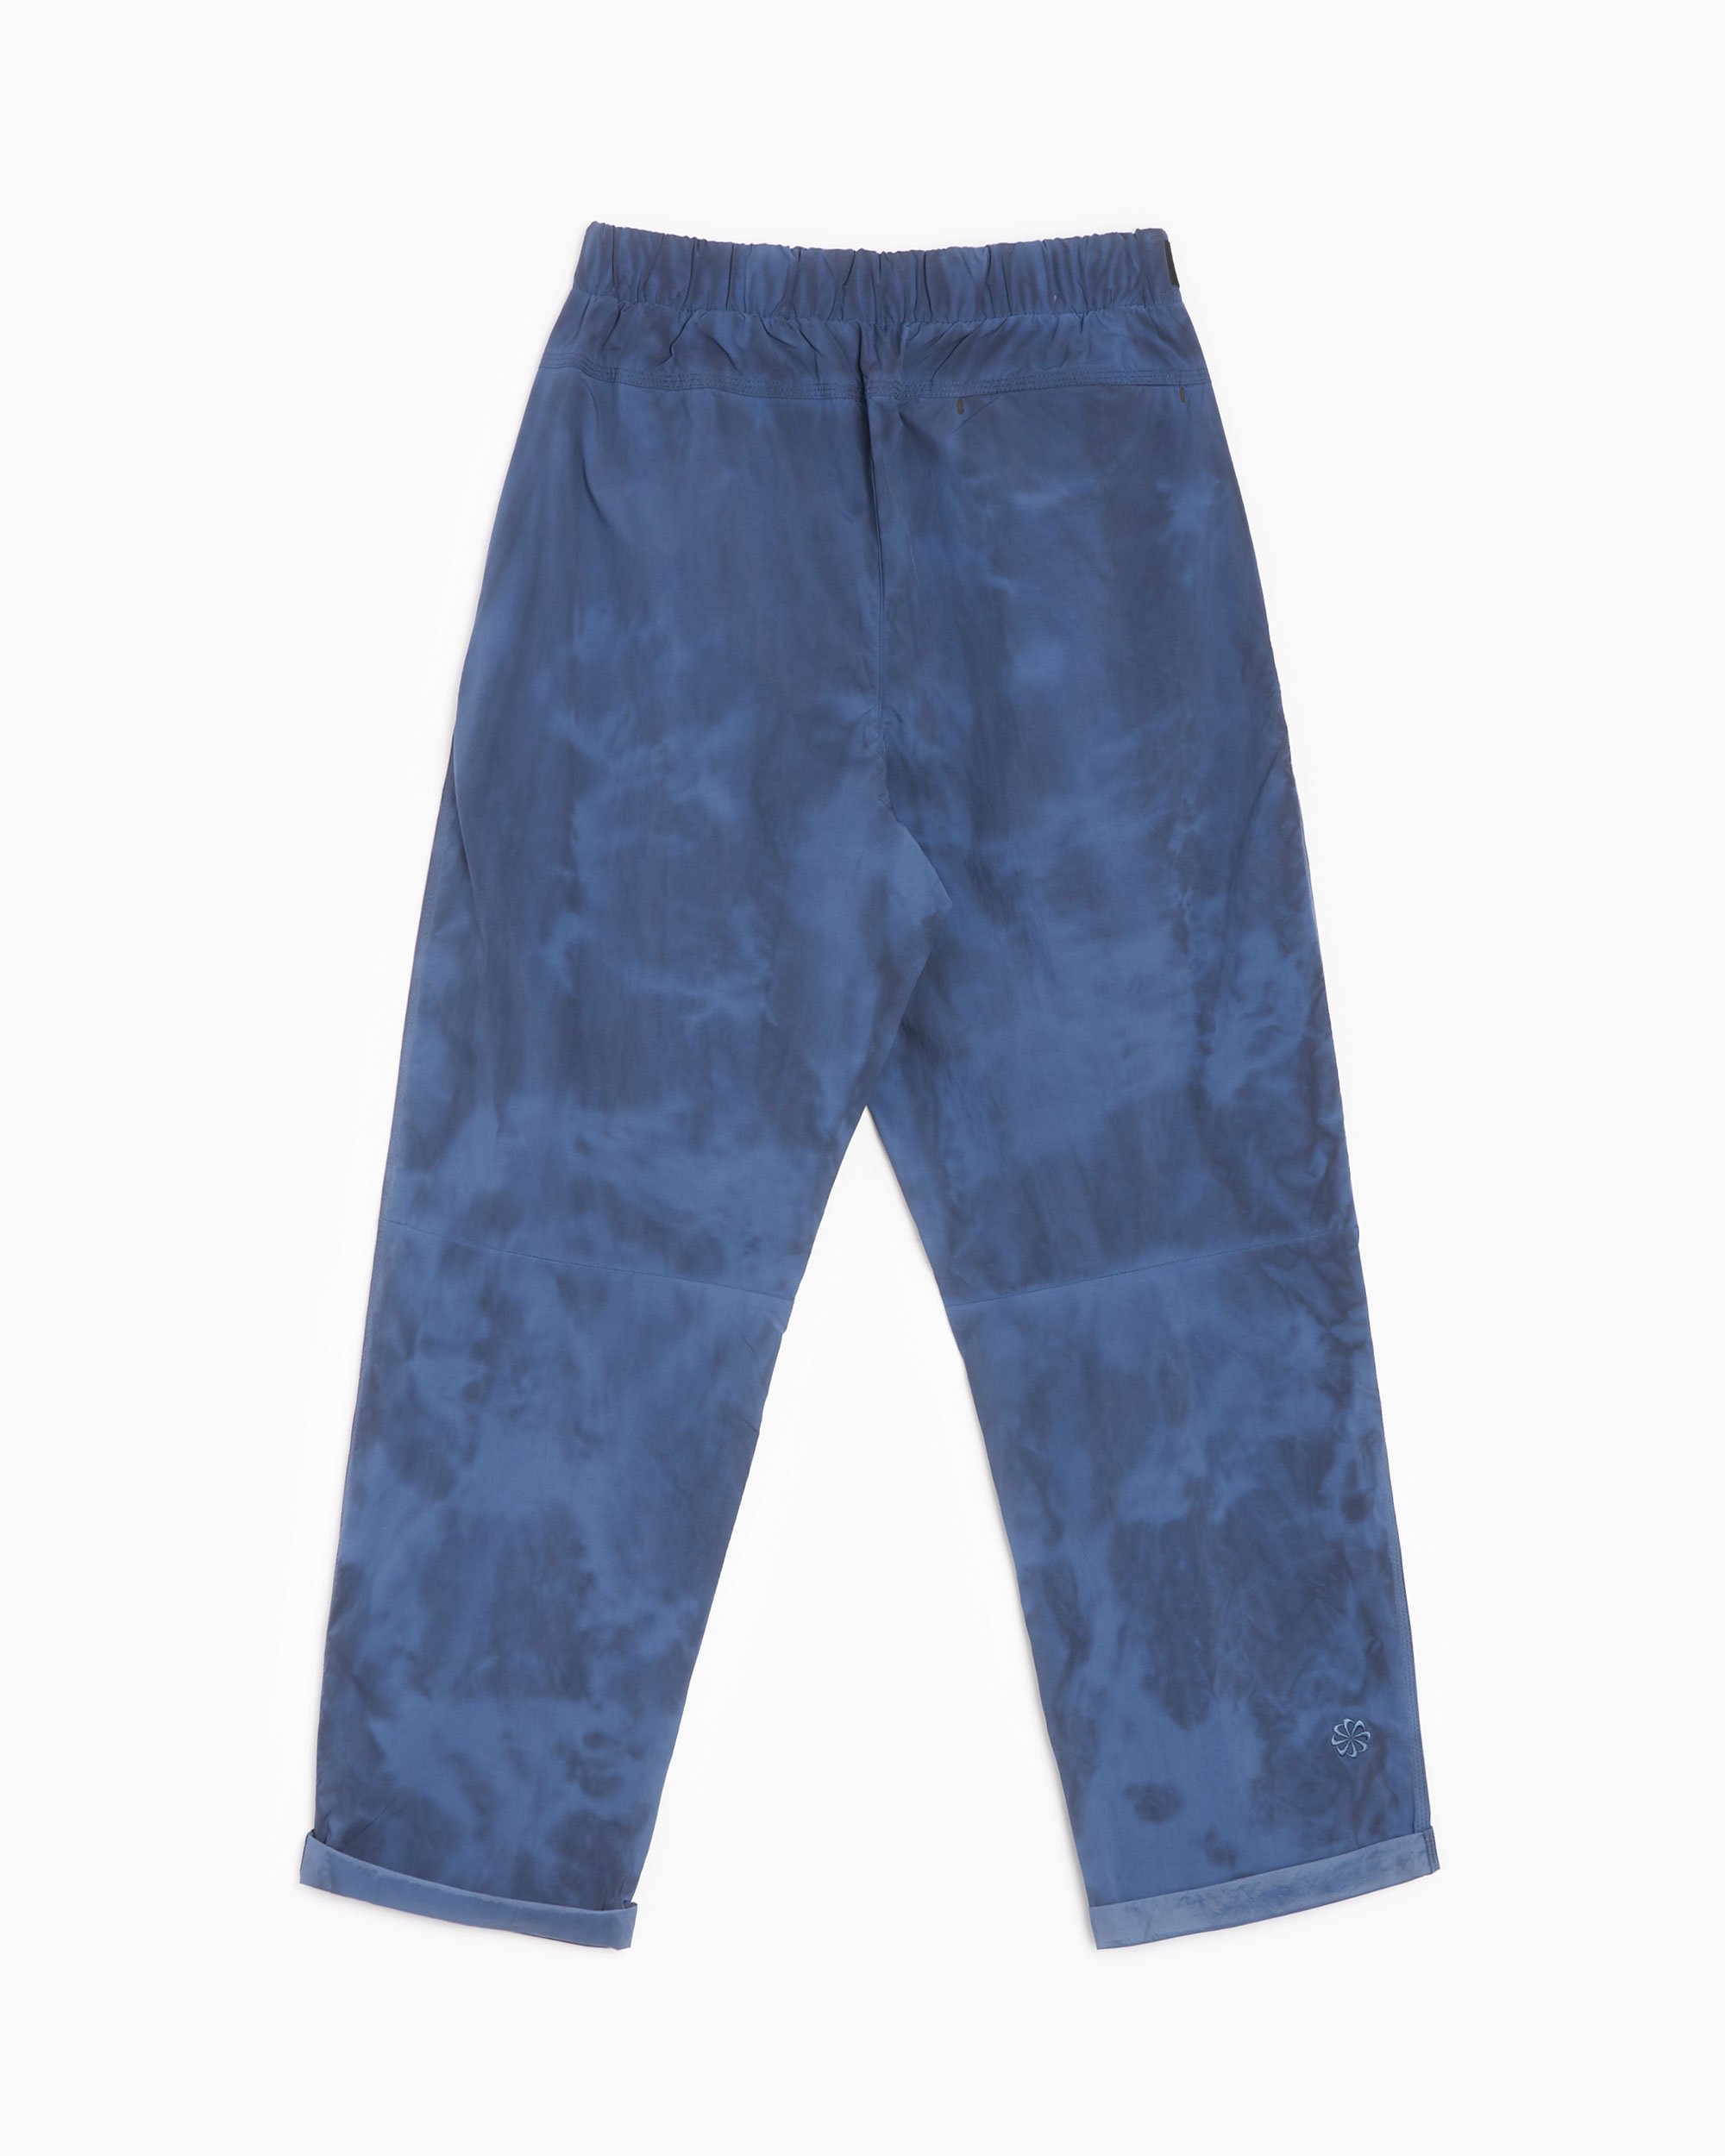 Nike Sportswear Tech Pack Men's Woven Pants Blue DX0243-491